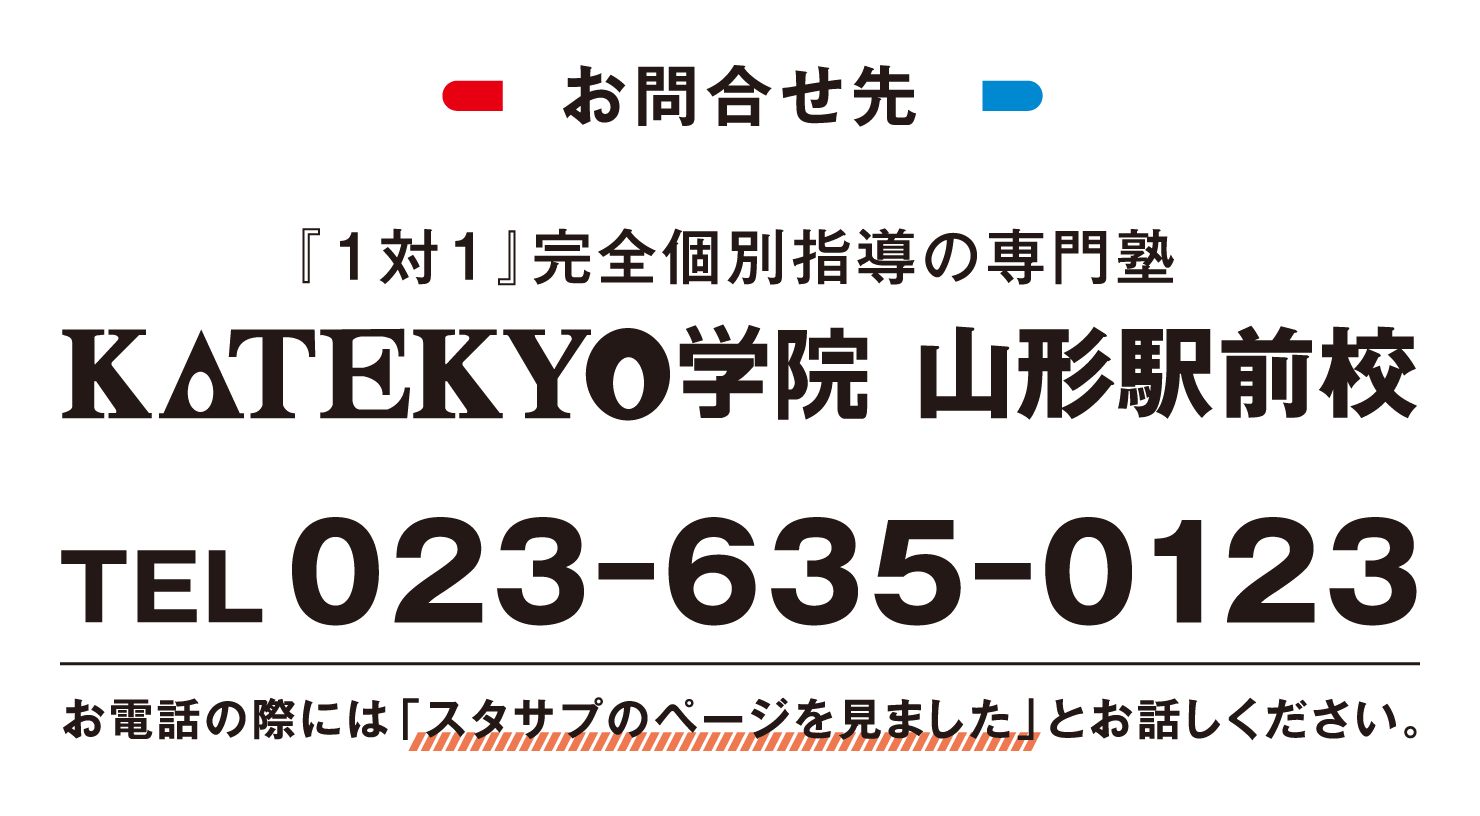 お問合せ先KATEKYO学院山形駅前校、電話番号は023-635-0123